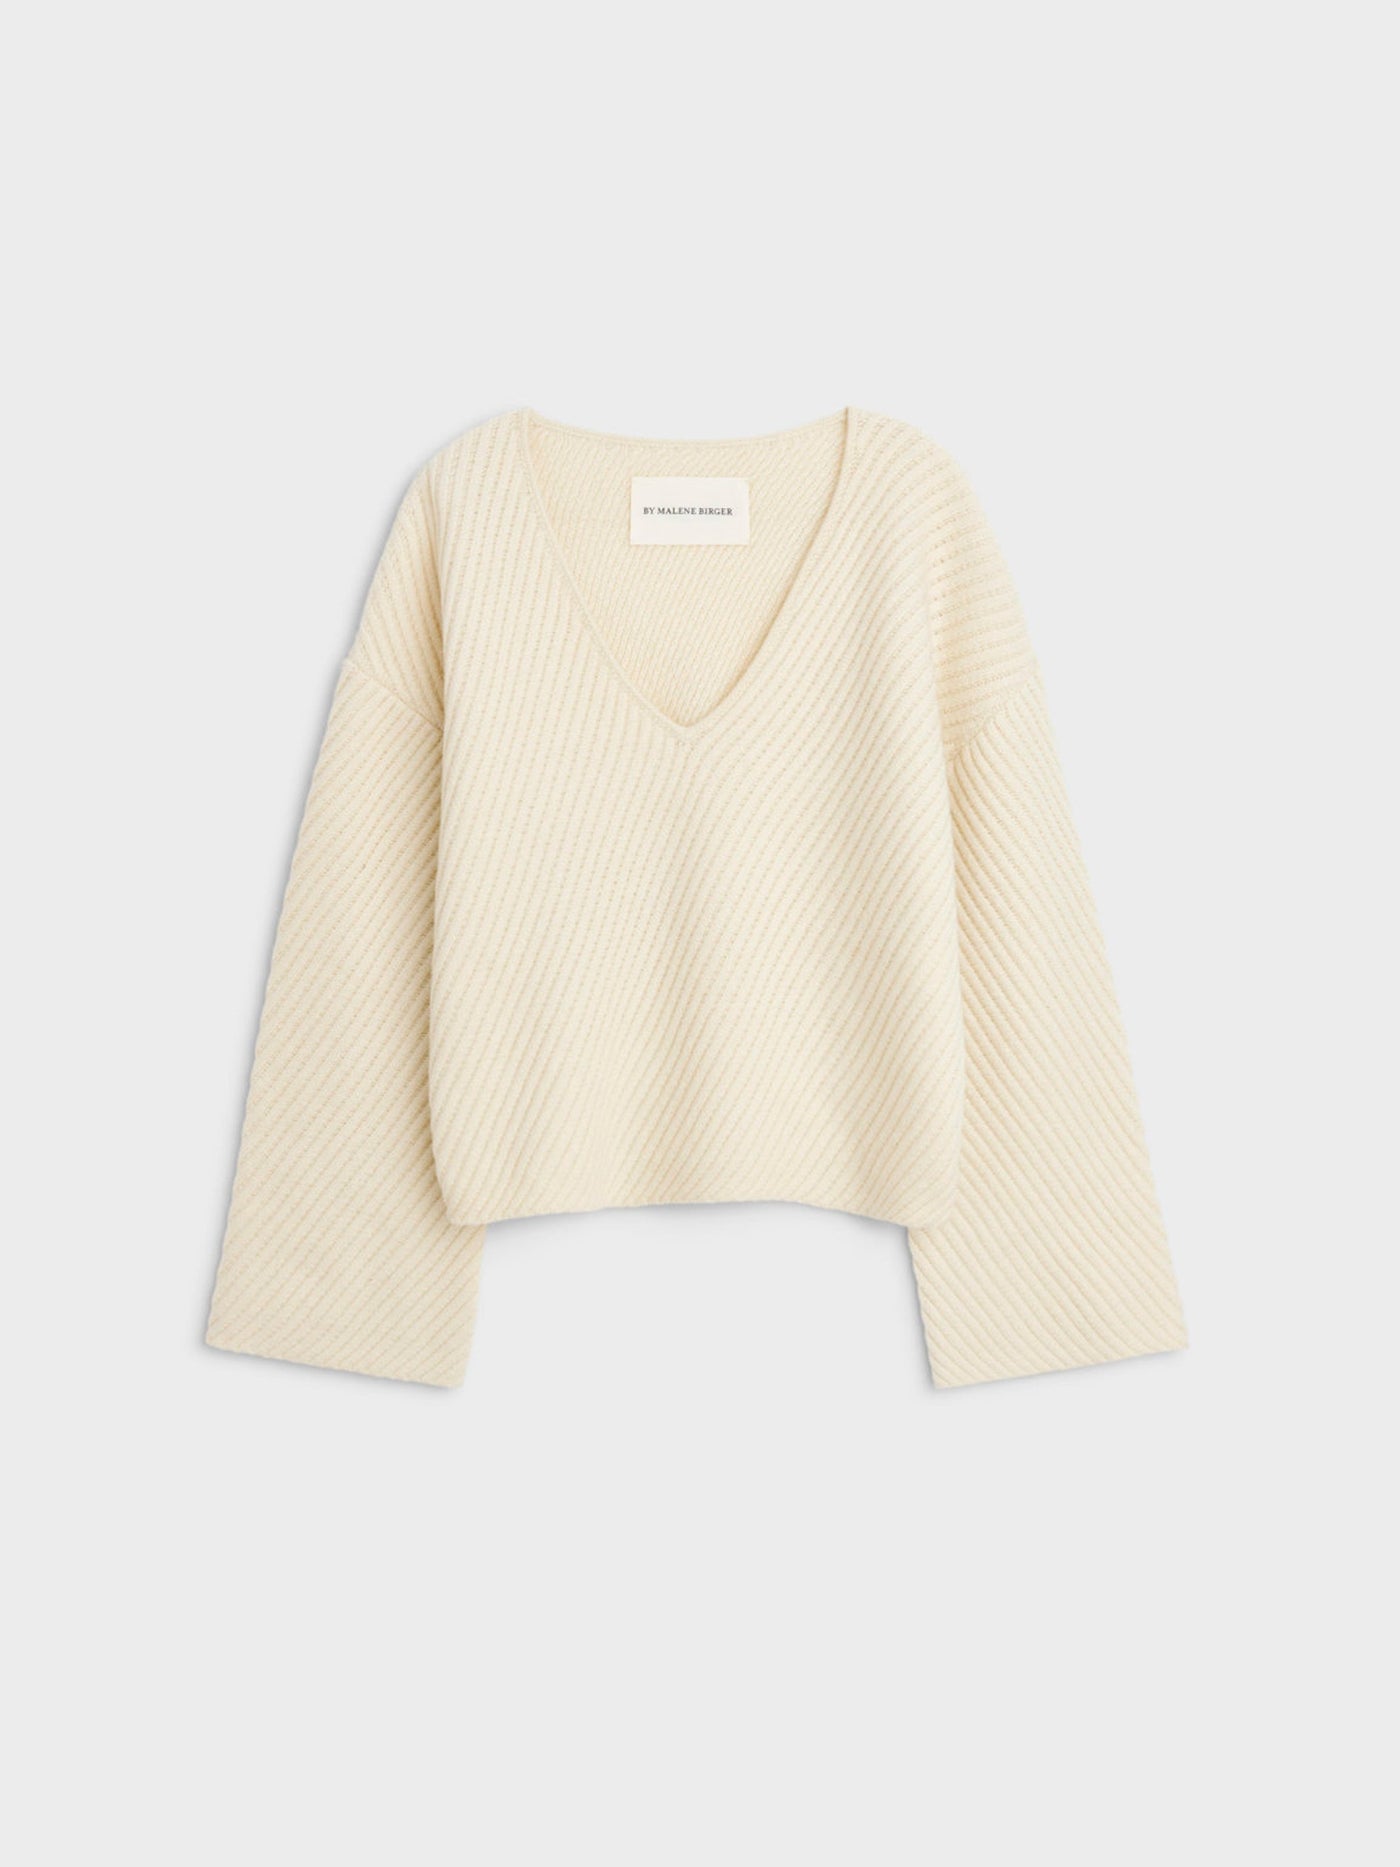 Emery sweater, cream white